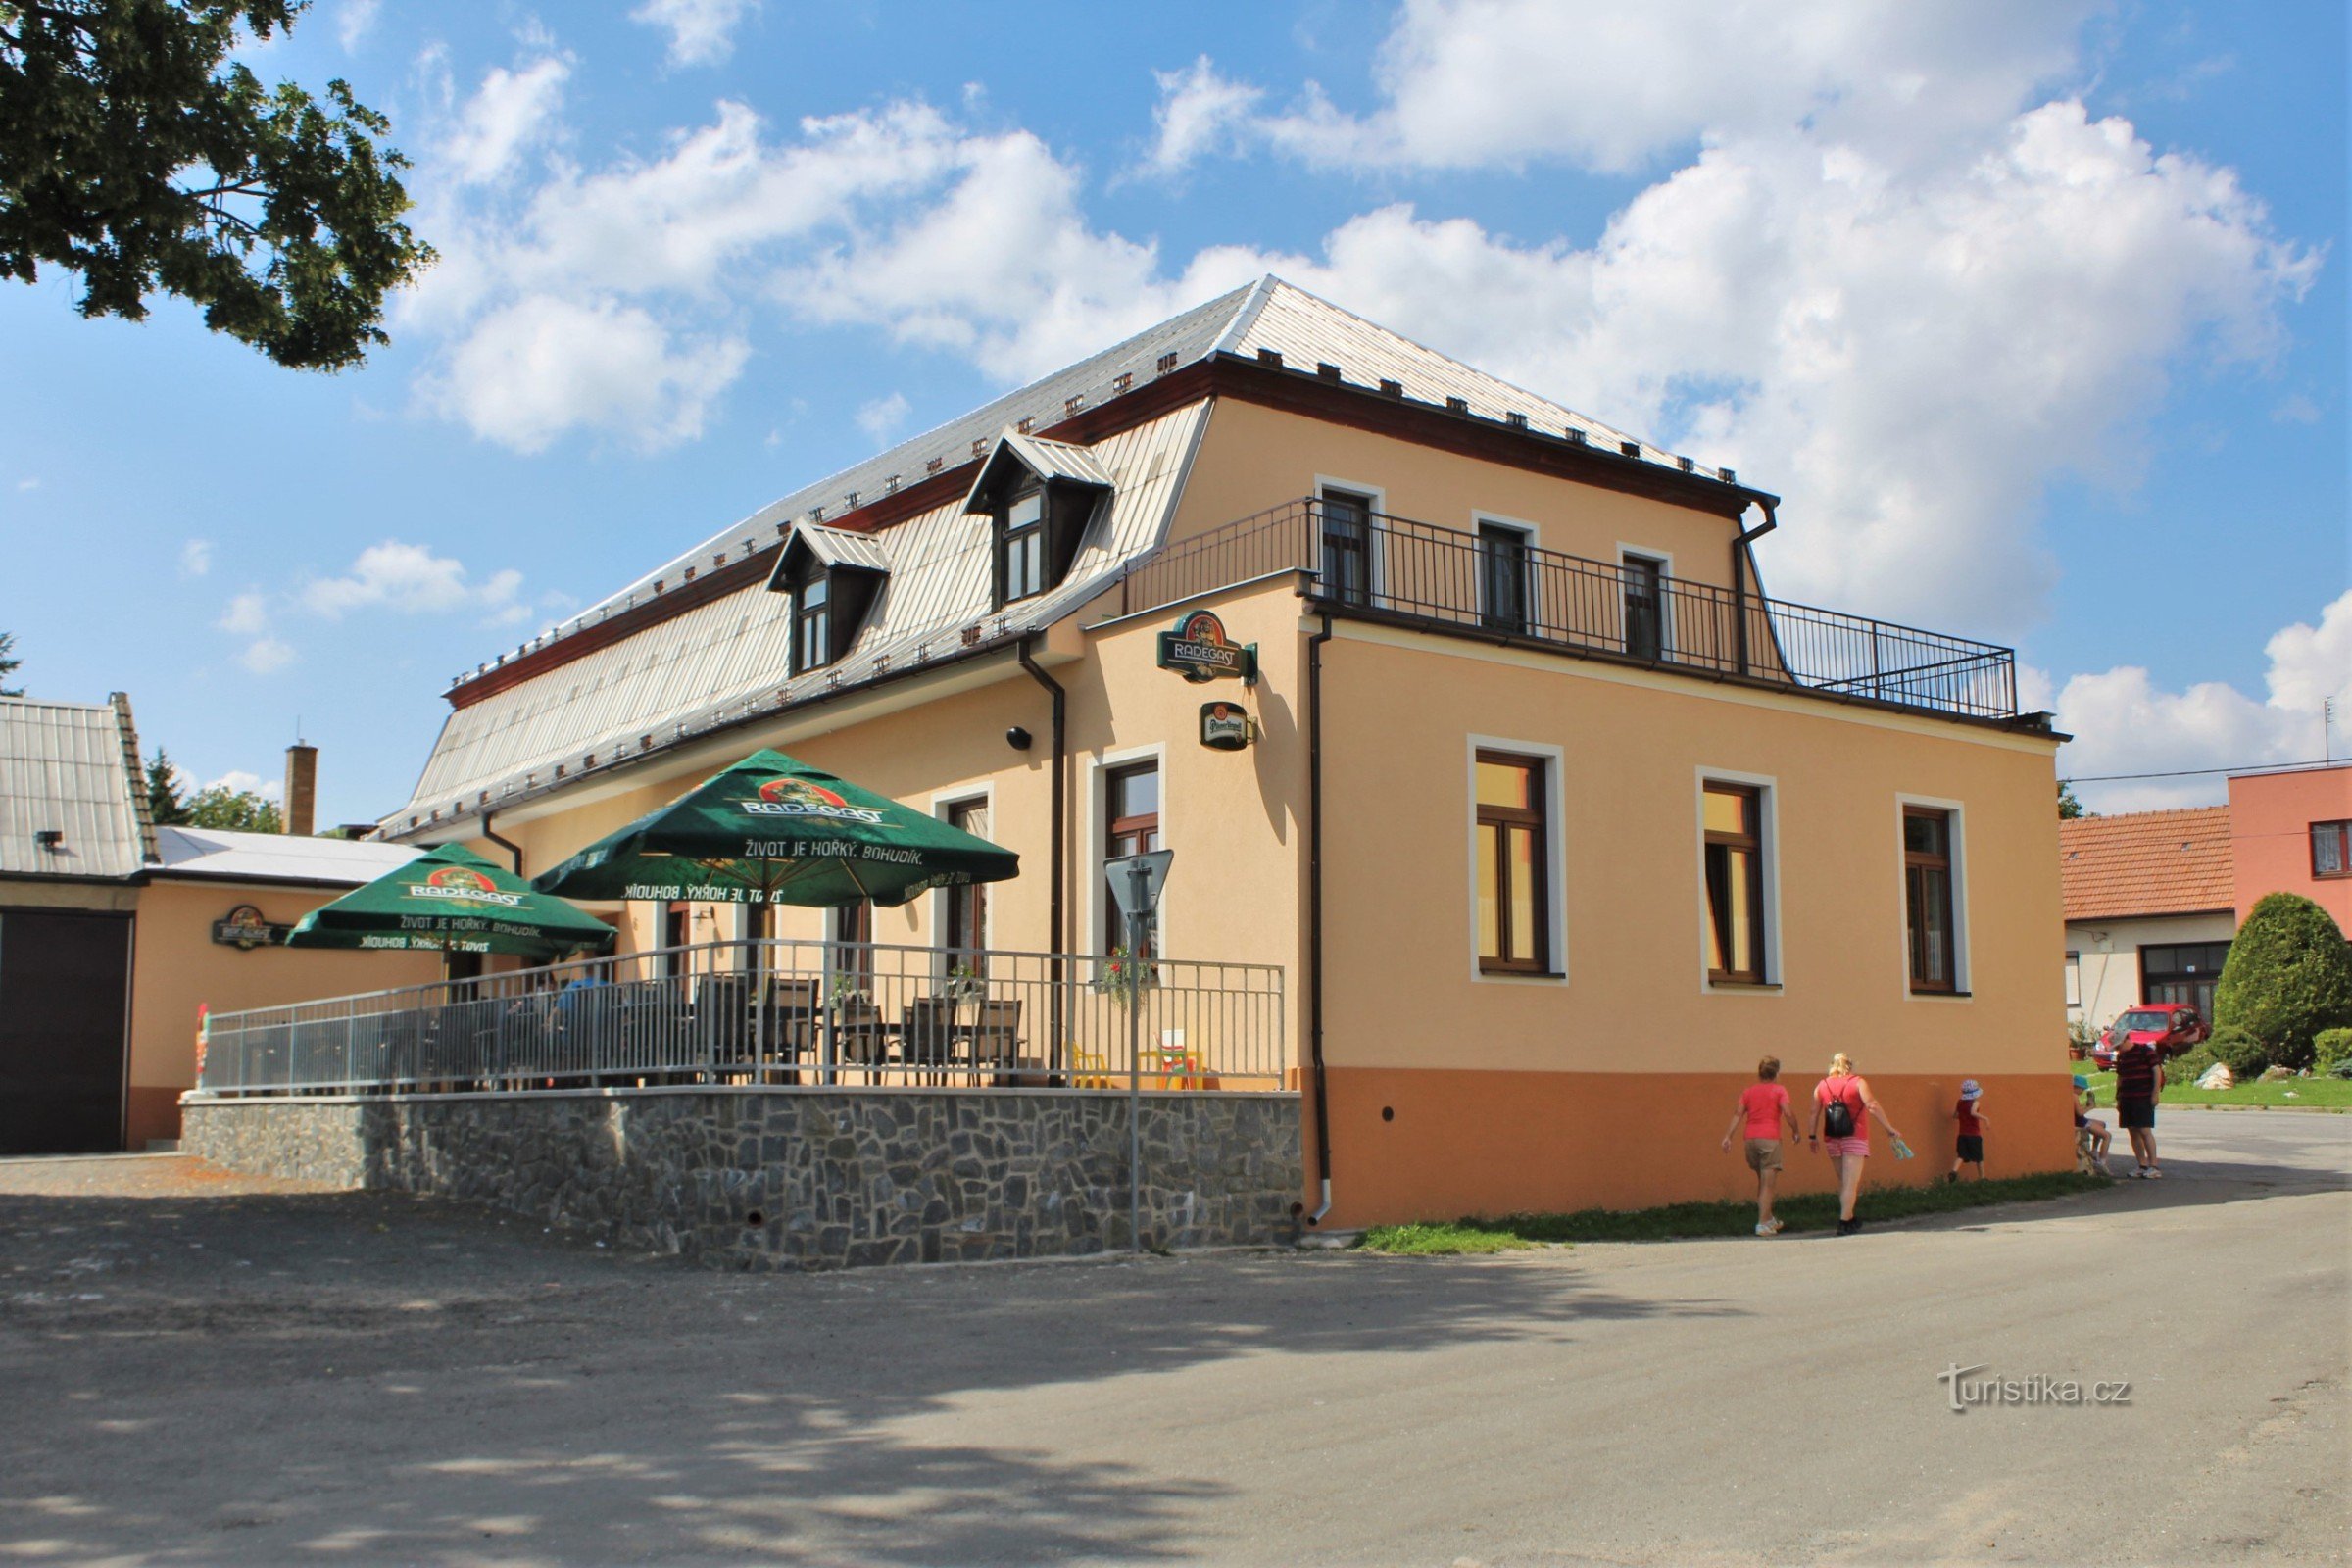 Ресторан Staré časy Inn працює протягом усього дня, а влітку працює стійка реєстрації гостей